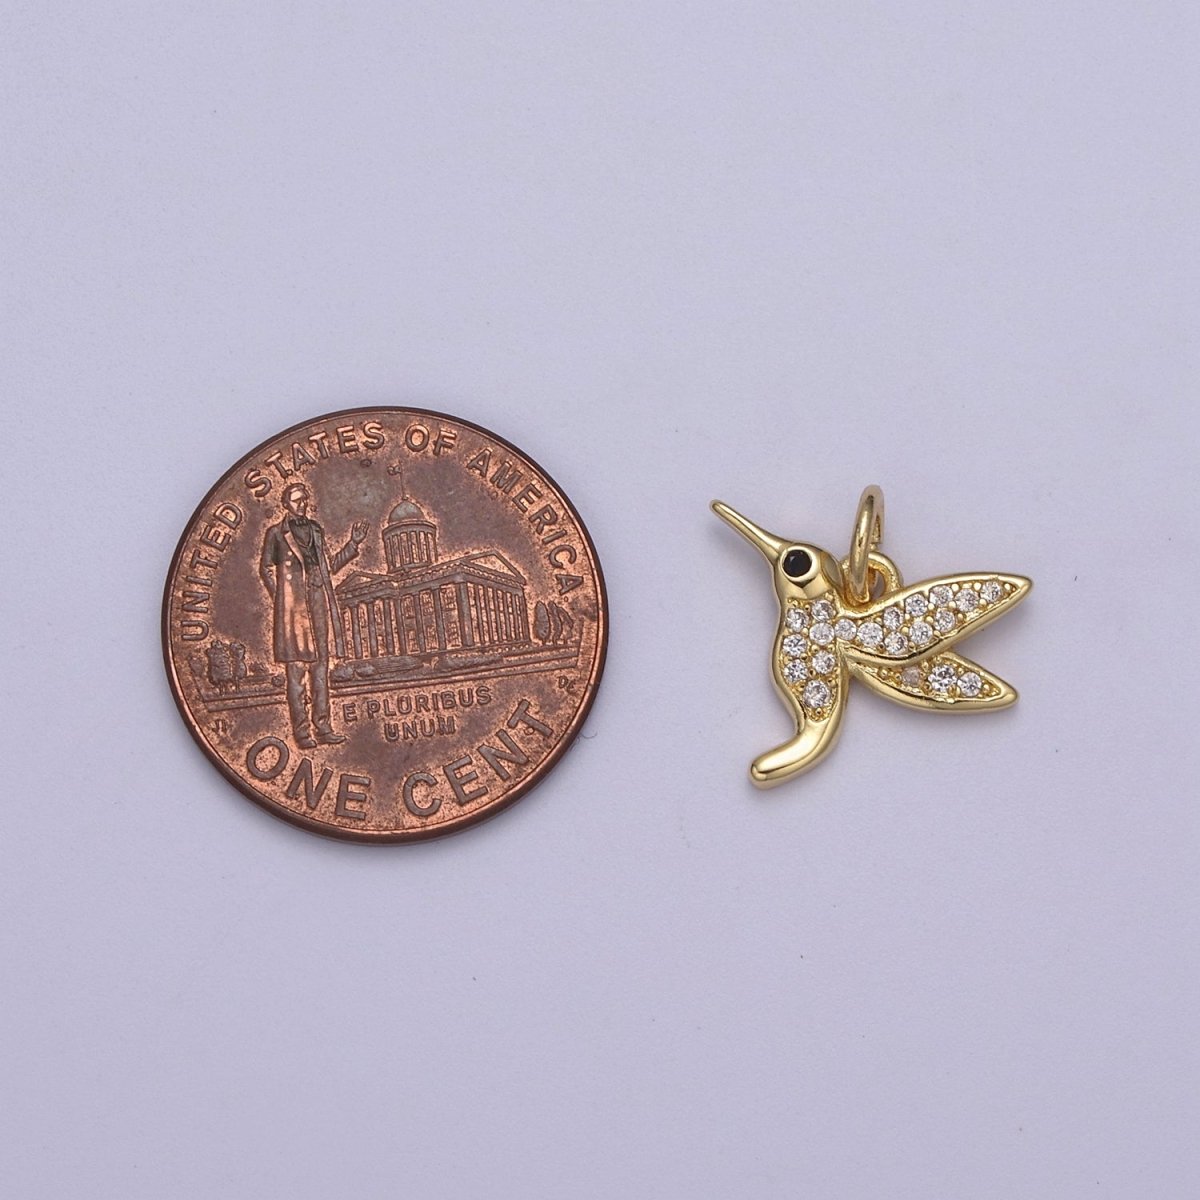 Mini gold Hummingbird pendant 14k gold Filled Bird colibri Charm Friend Minimalist Layering Necklaces, Hummingbird Jewelry N-387 - DLUXCA